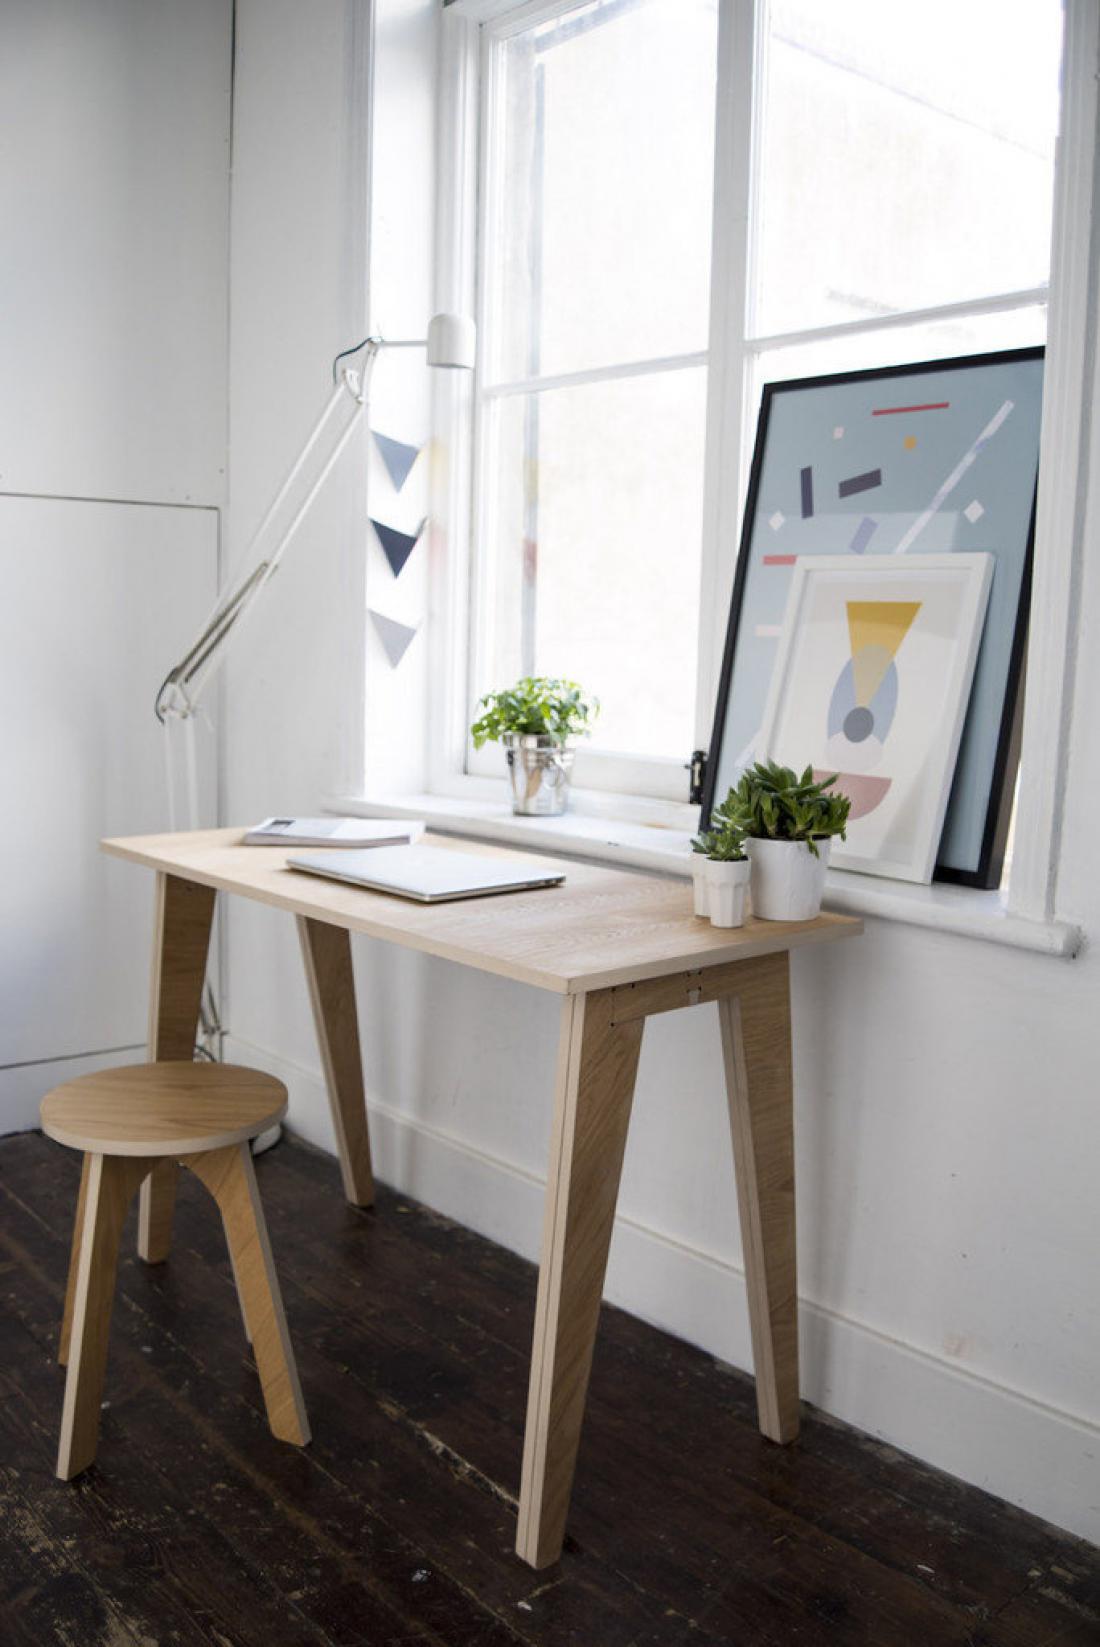 Povsem izčiščen minimalizem v vsej svoji lepoti se kaže v mizi Avelere. Lesena miza dokazuje, da je preprosto najlepše in da so najboljši izdelki očiščeni in pristni.